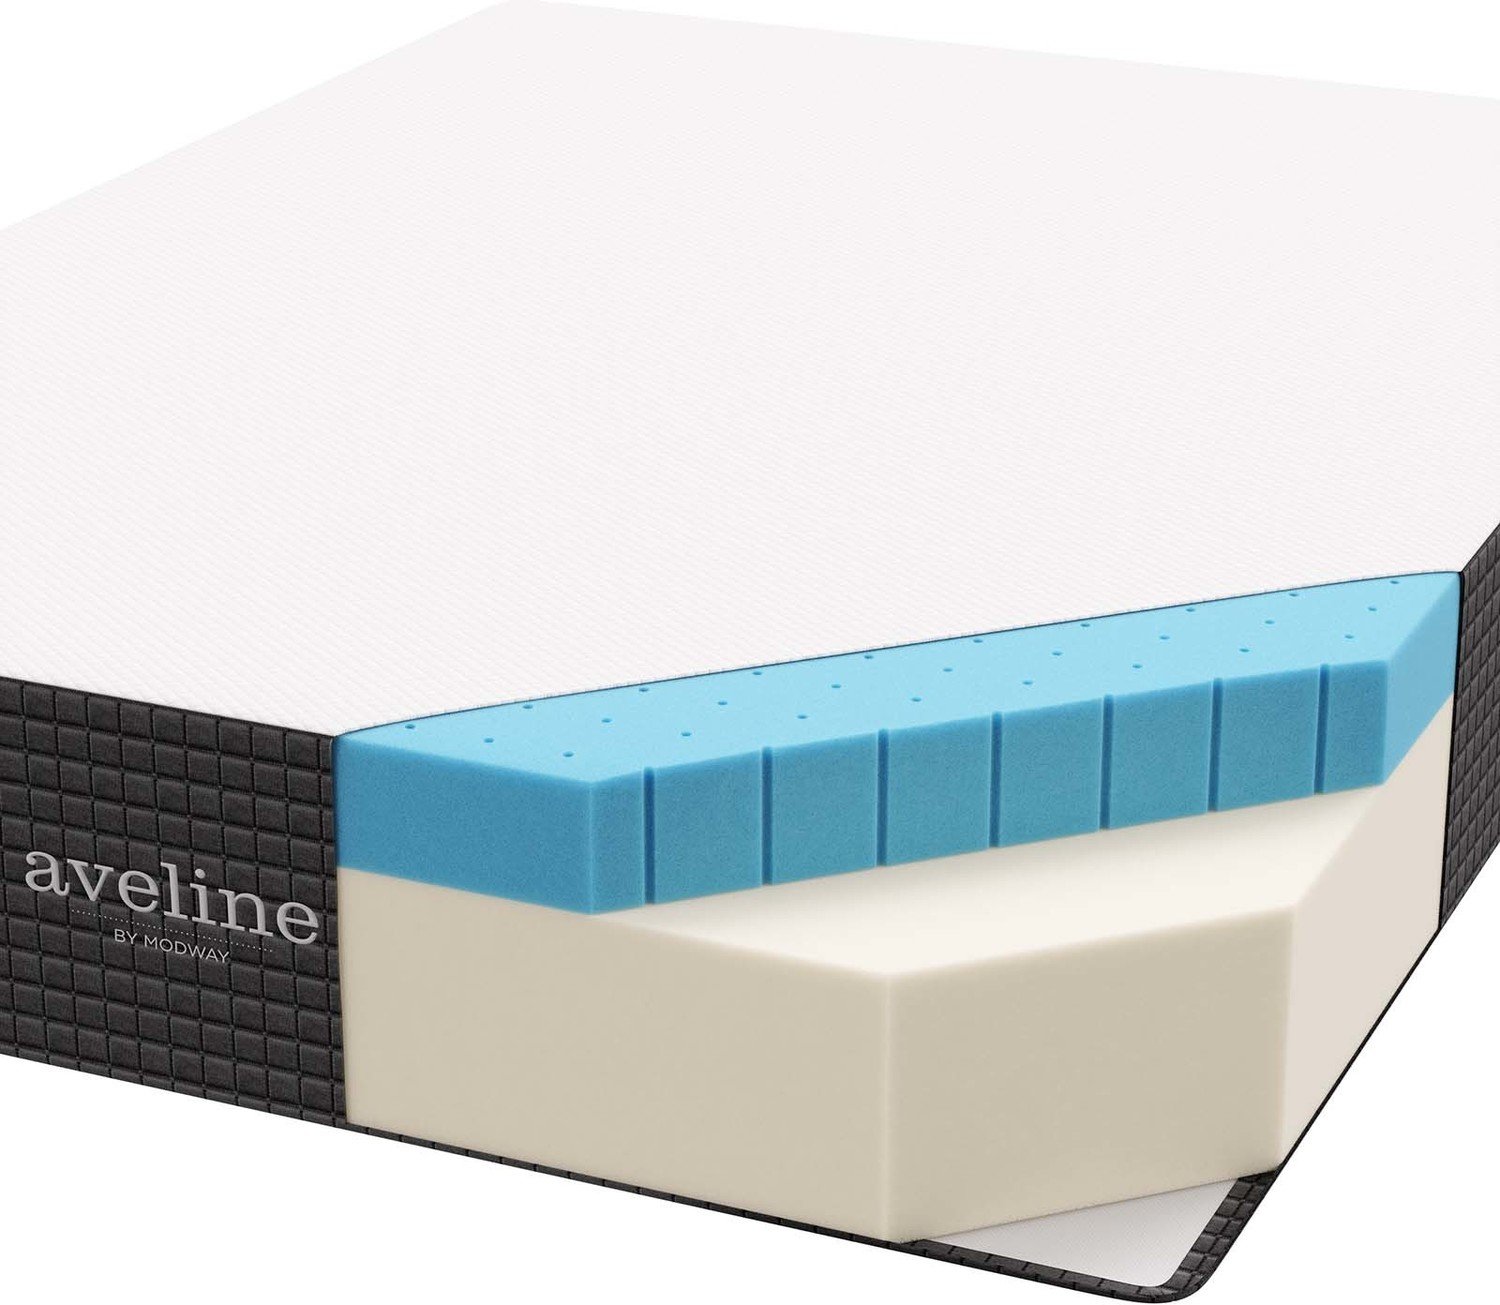 king memory foam mattress set Modway Furniture Queen Mattresses White